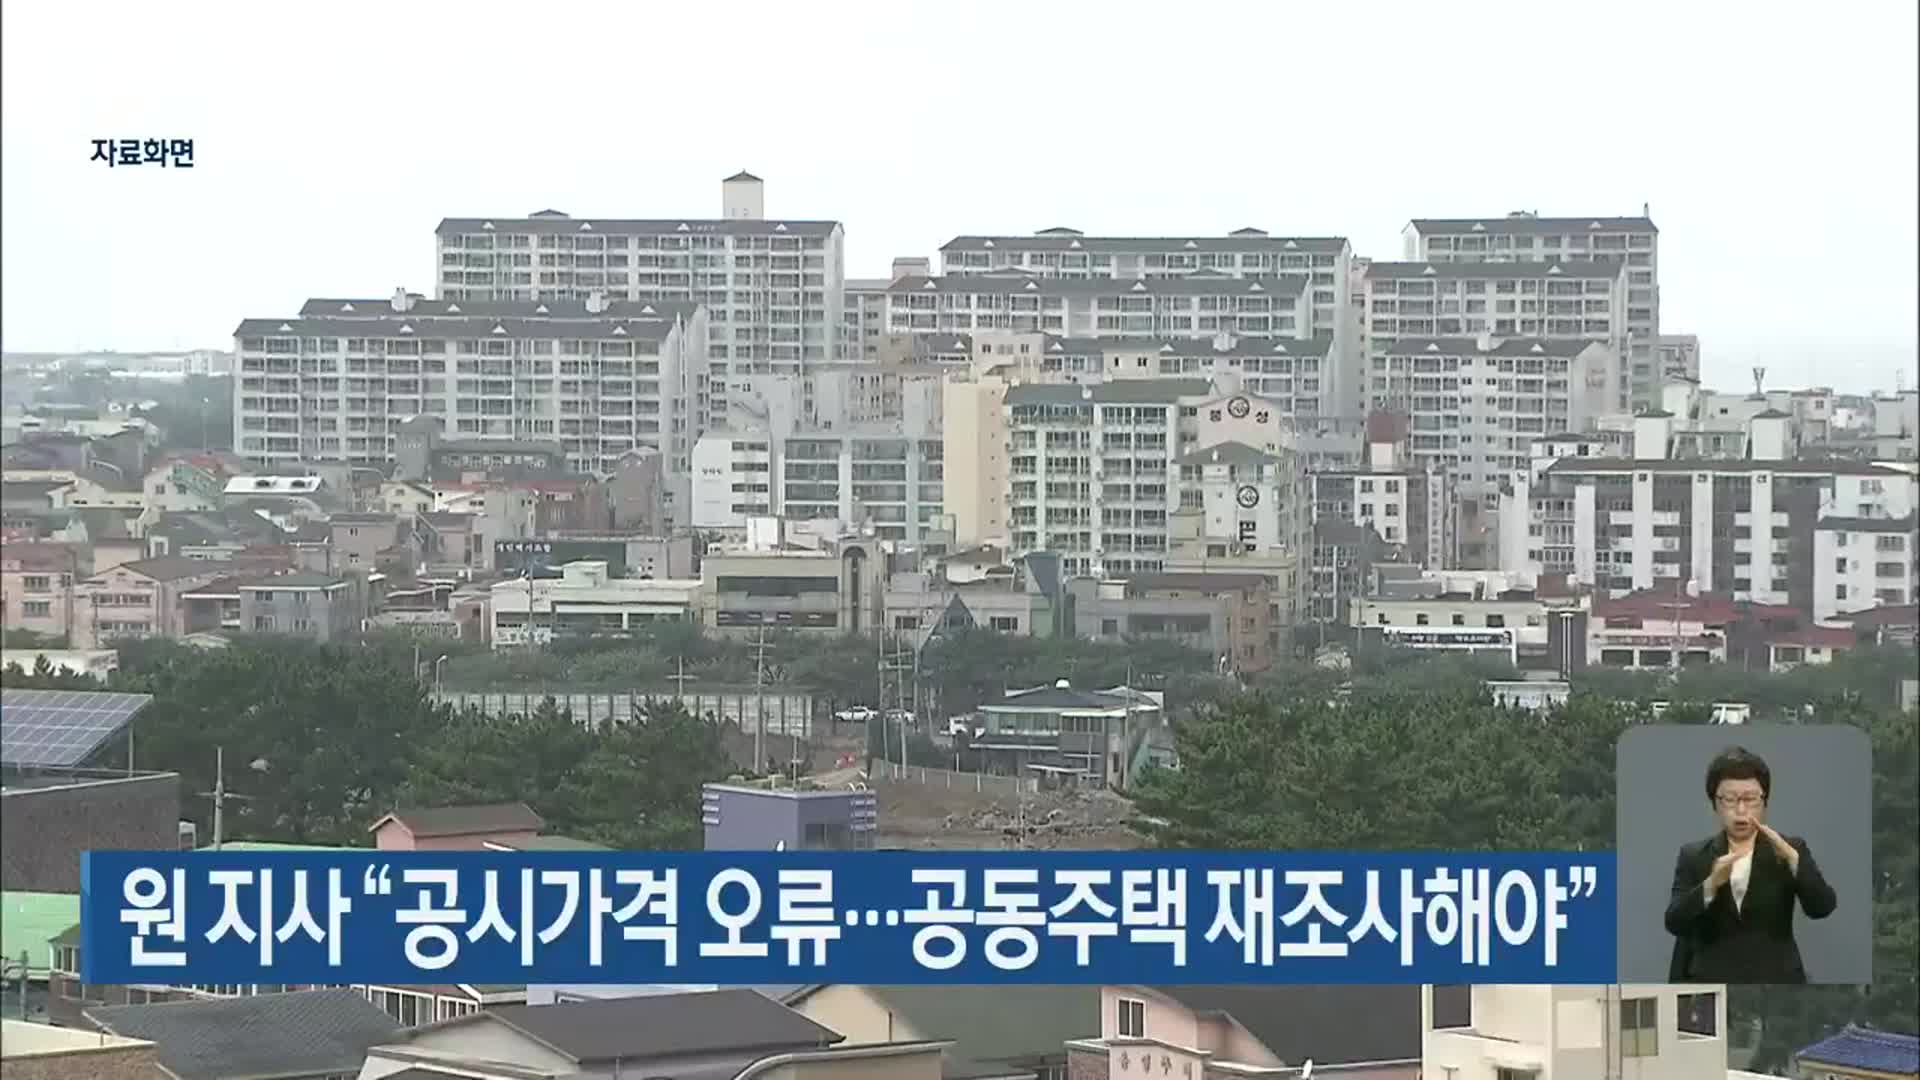 원희룡 지사 “공시가격 오류…공동주택 재조사해야”